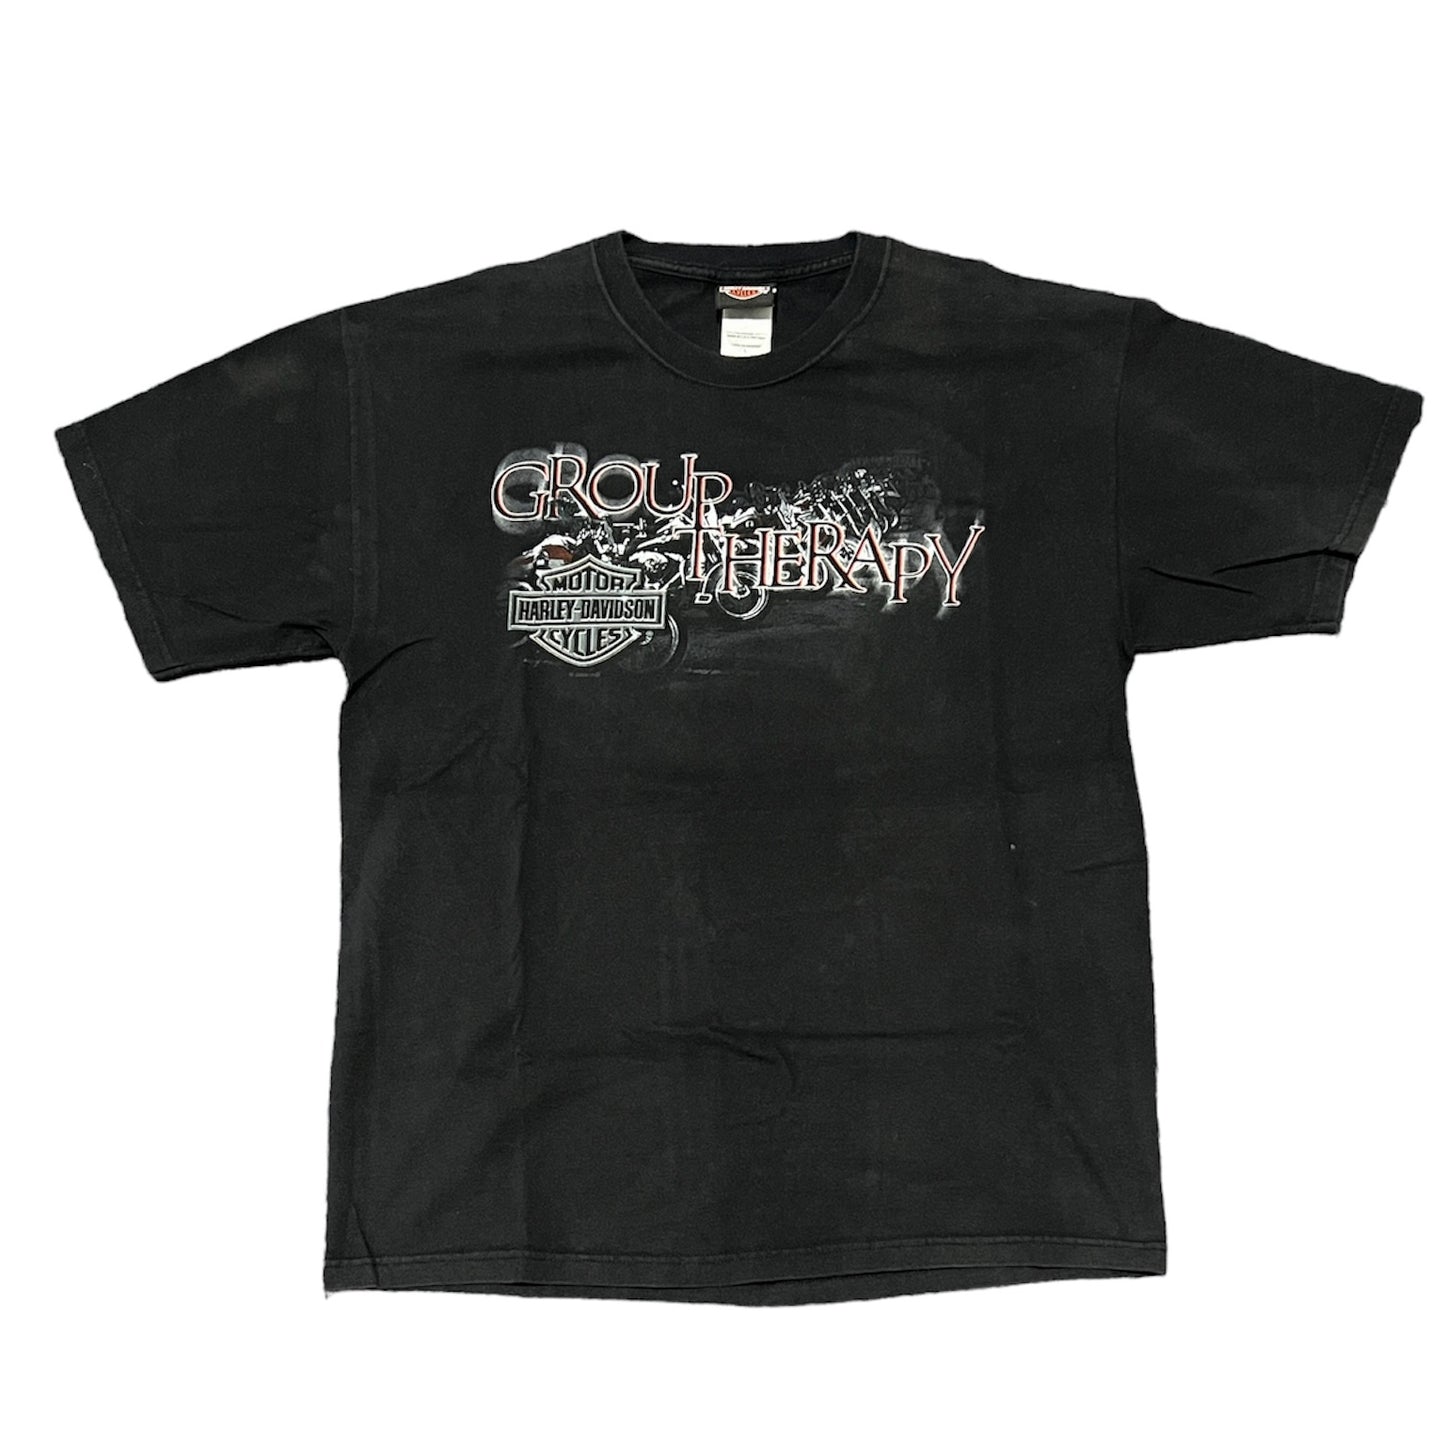 Harley Davidson Big Swamp Opelika, Alabama T-Shirt Size Large